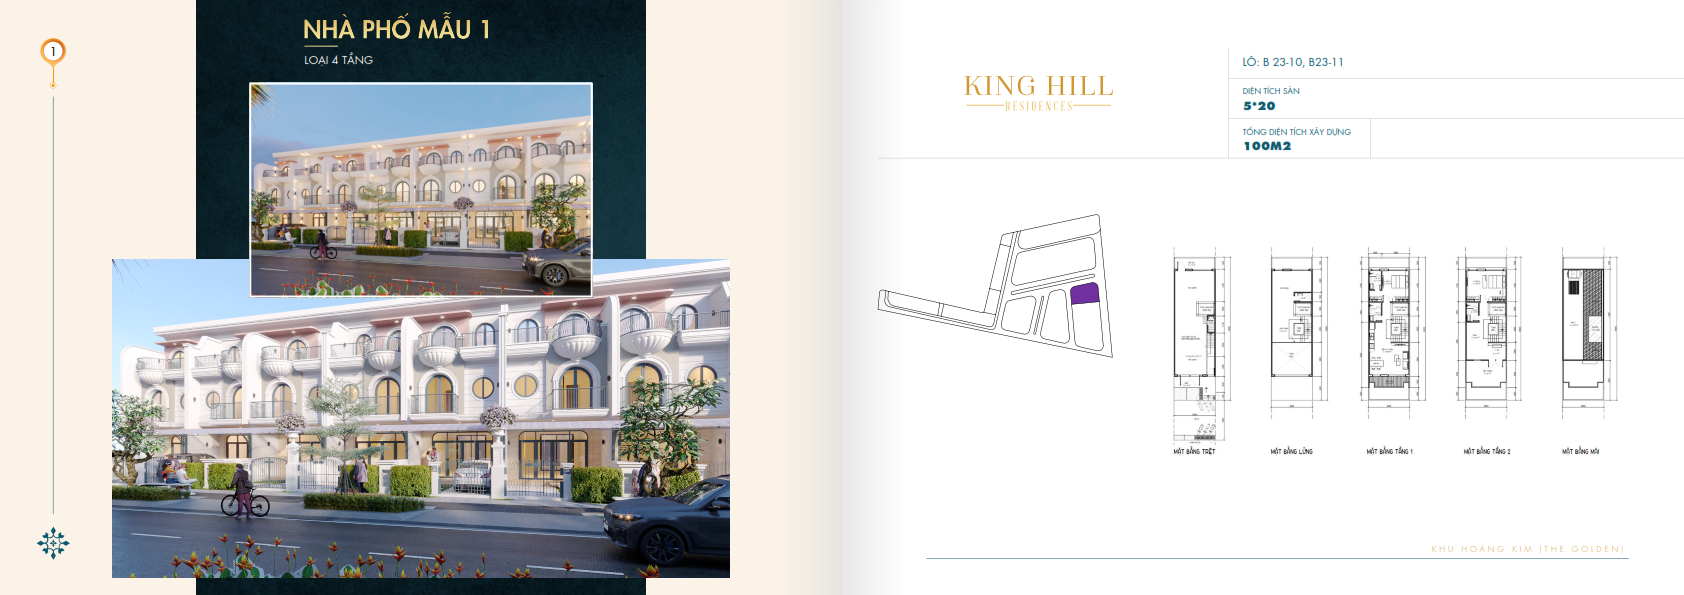 Nha pho mau 1 loai 4 tang Du an Khu dân cư King Hill - King Hill Residences